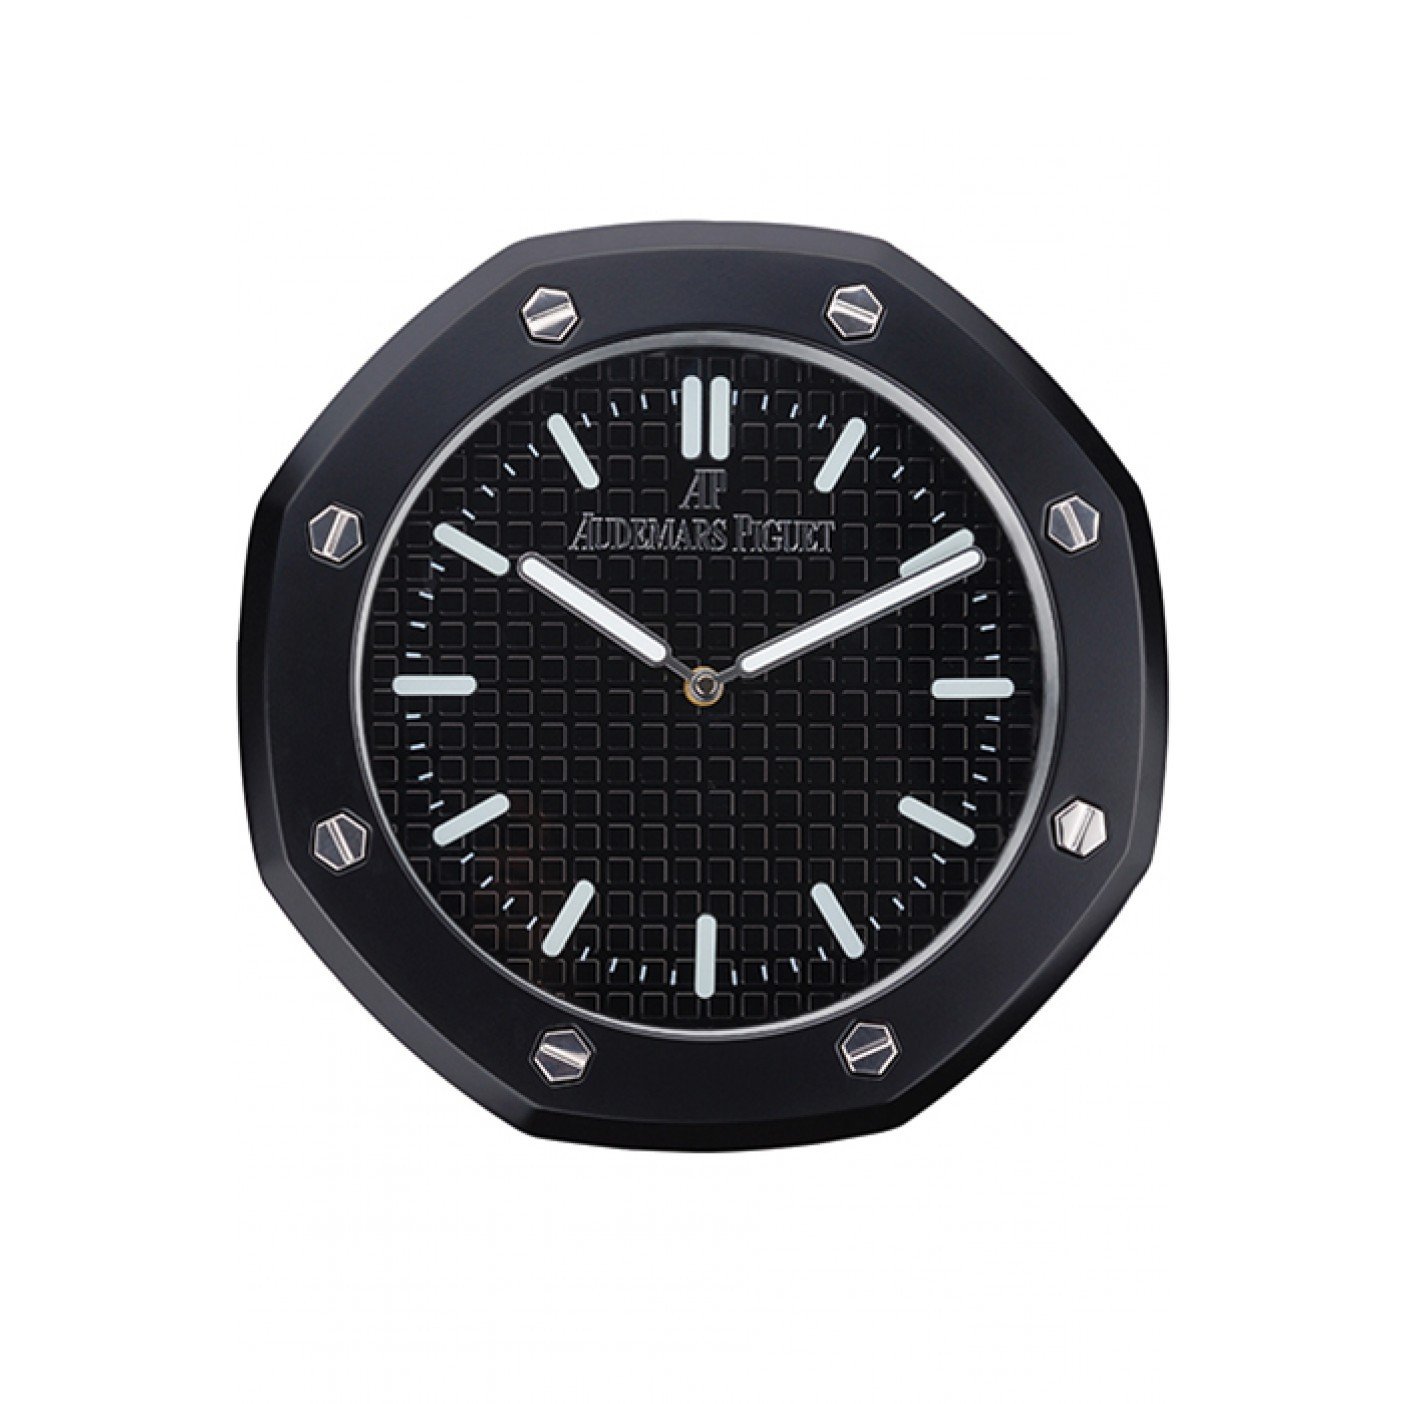 Audemars Piguet Royal Oak Wall Clock Black 622462